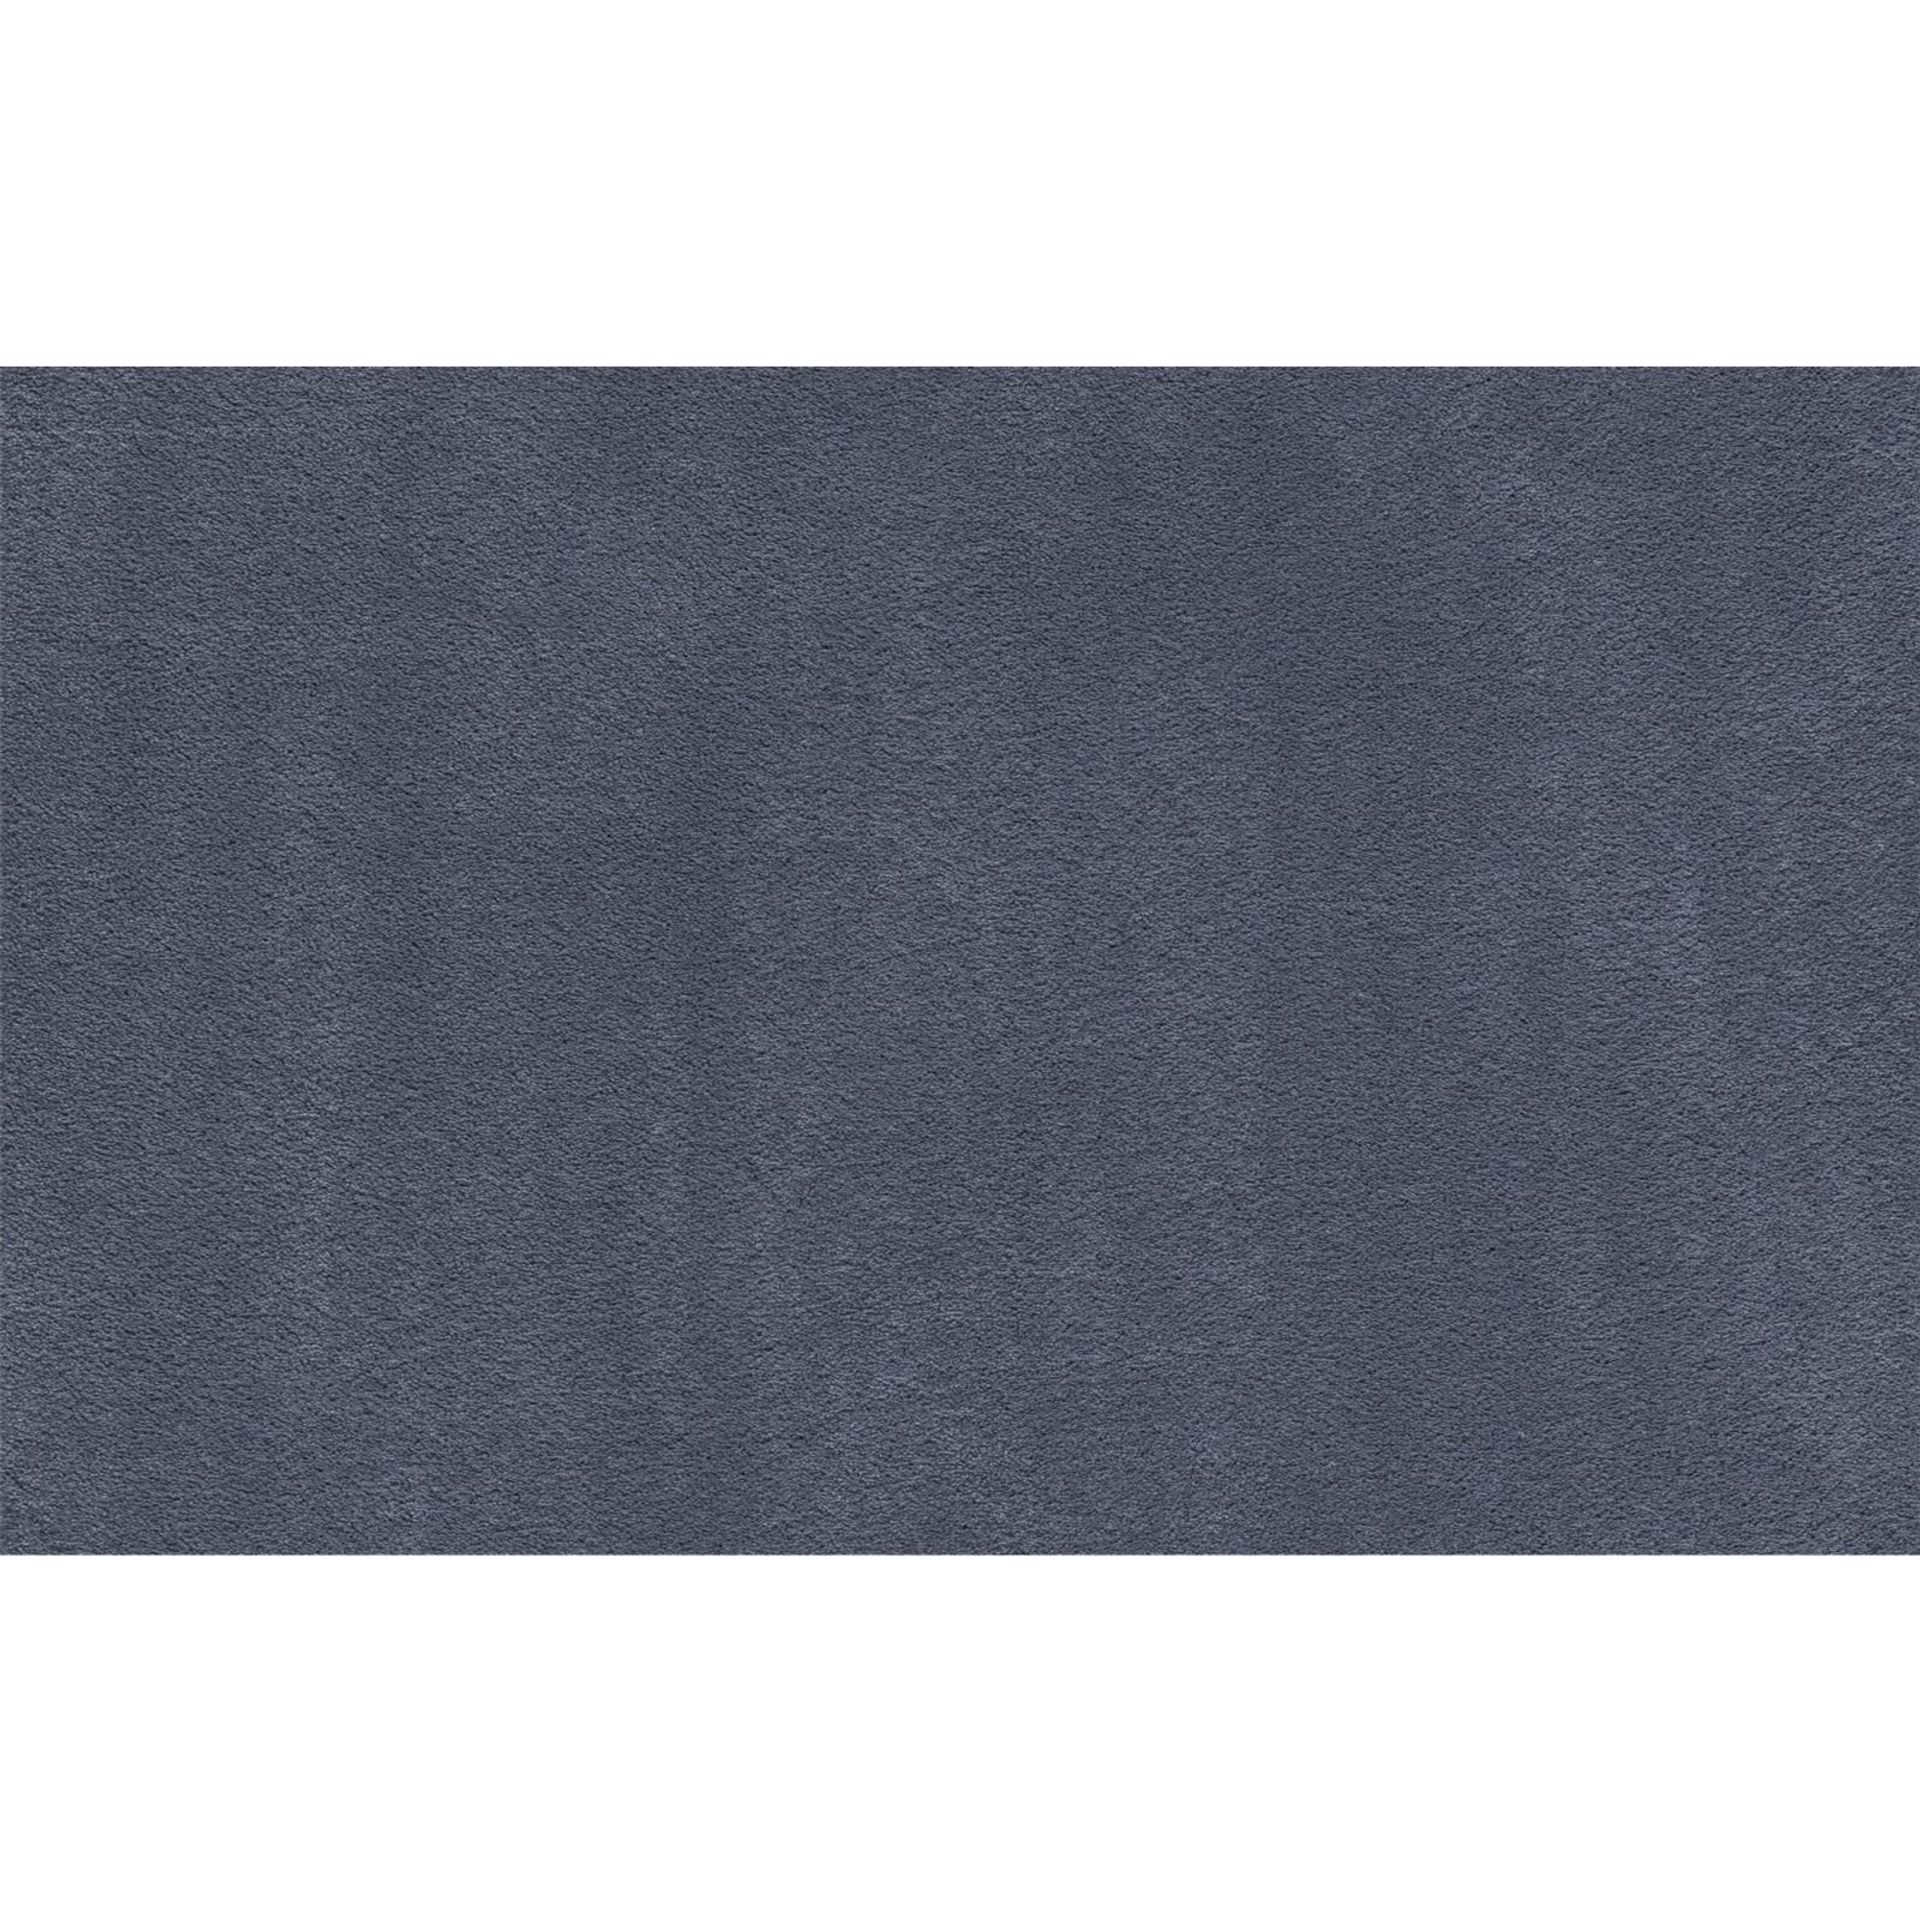 Teppichboden Vorwerk Superior 1067 MIRA Hochflor Blau 3Q76 - Rollenbreite 400 cm